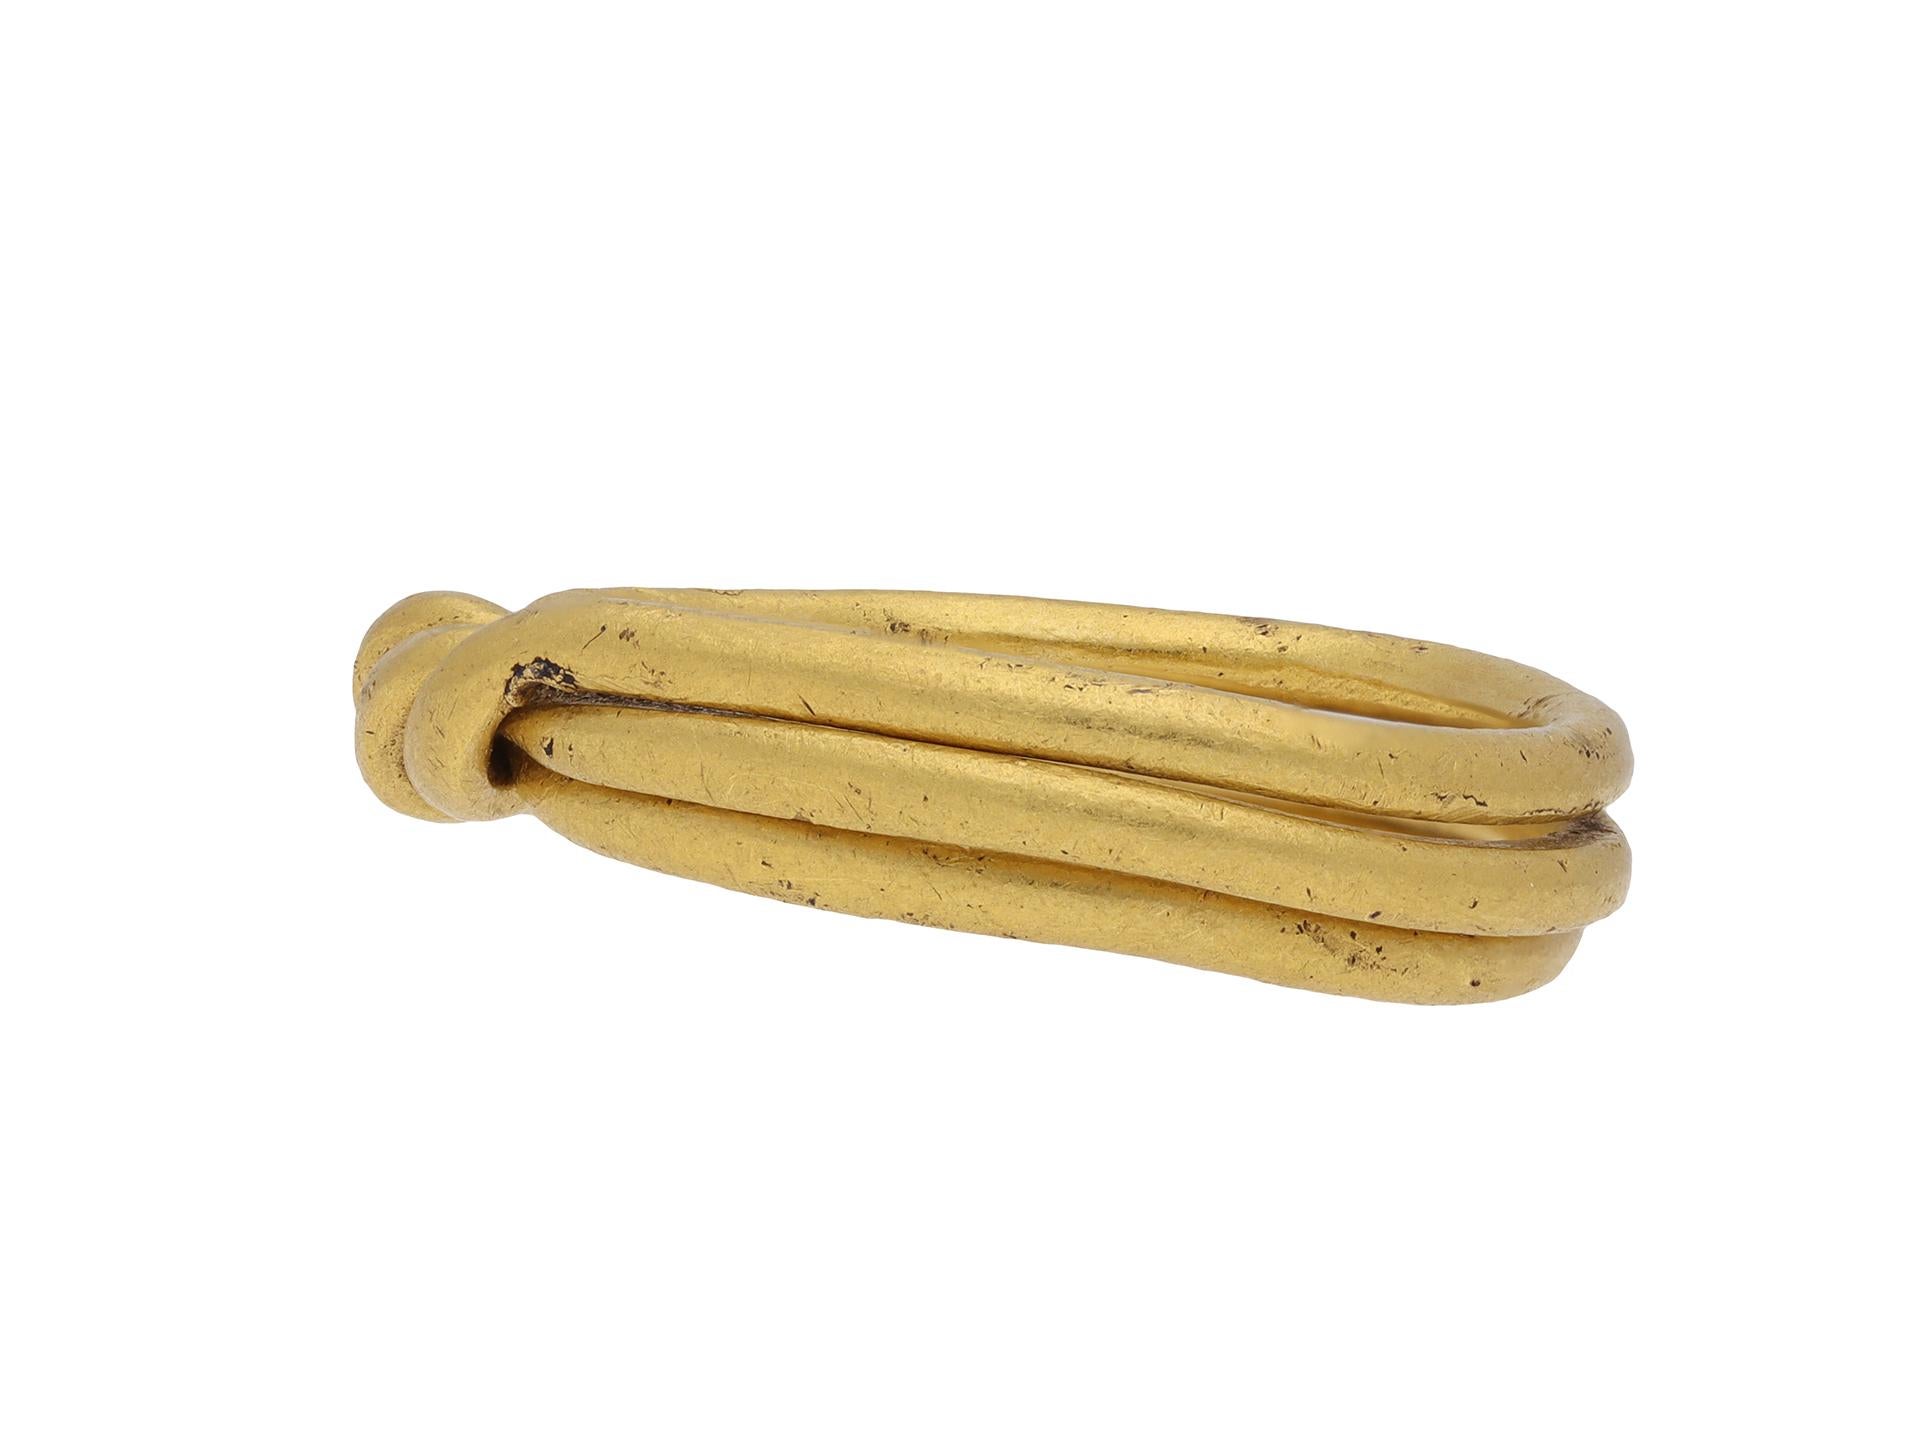 Postmittelalterlicher Goldpuzzle-Ring. Ein Goldpuzzle-Ring, bestehend aus drei miteinander verbundenen Reifenteilen mit einer Drehung an der Spitze. Die drei Teile können zusammengedreht werden, um ein gewundenes Metalldesign zu bilden. Geprüftes